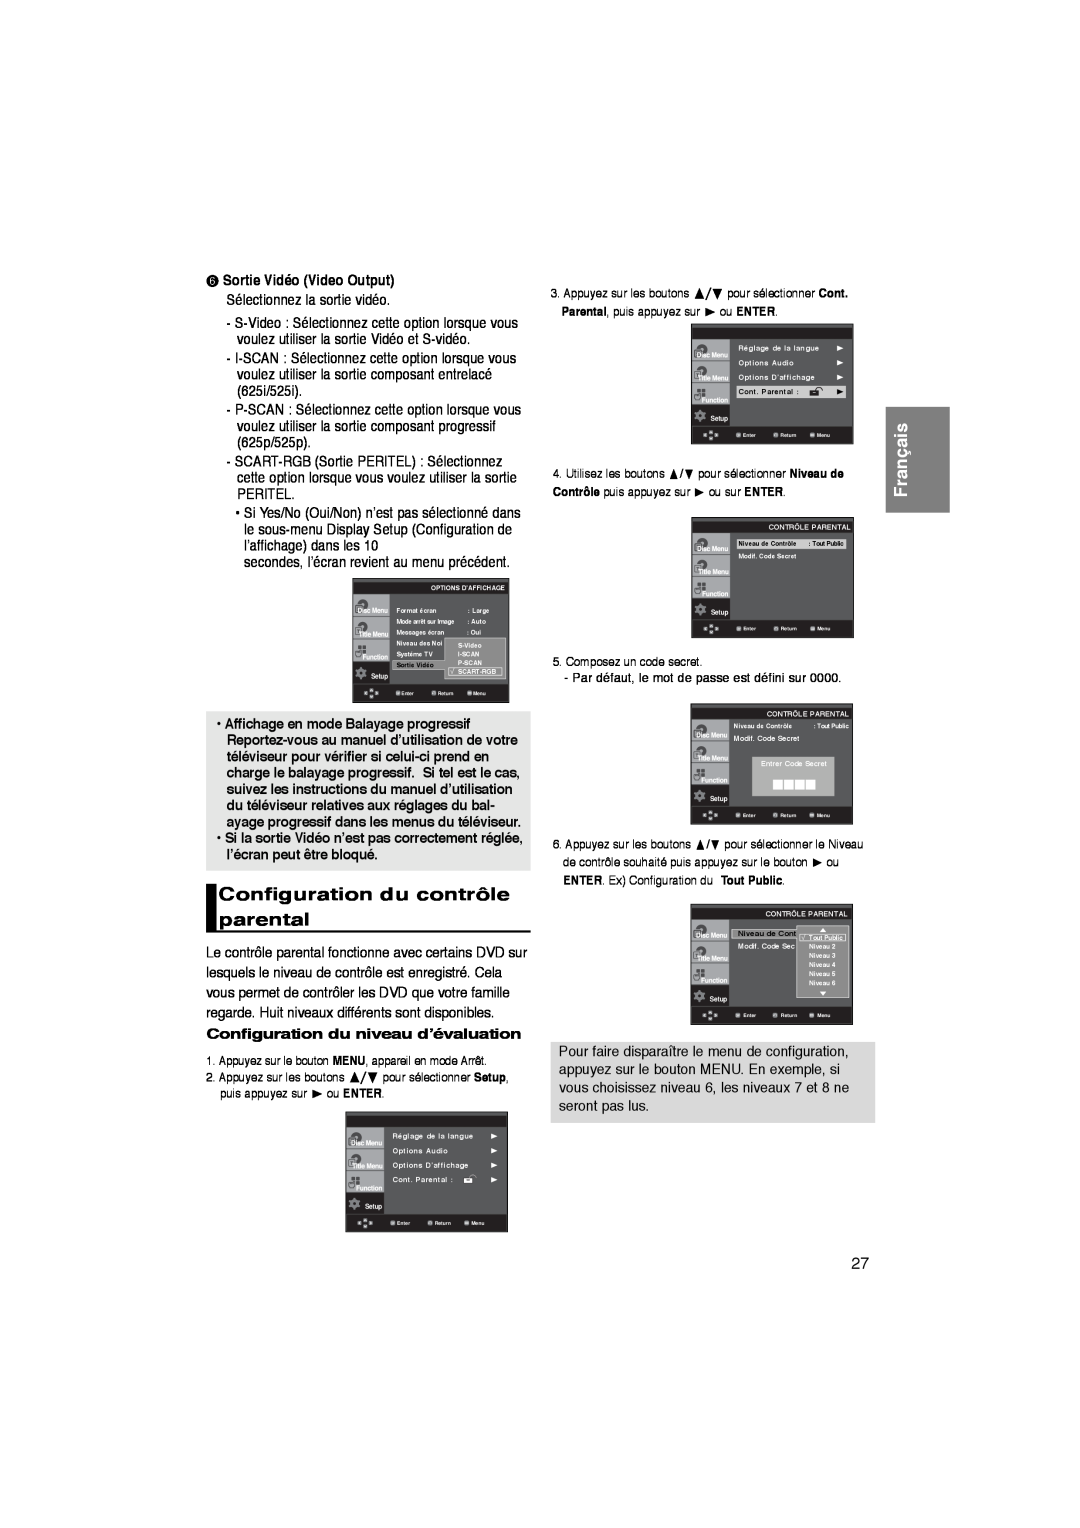 Samsung DVD-P260K/AFR manual Configuration du contrôle parental, Configuration du niveau d’évaluation, Français 